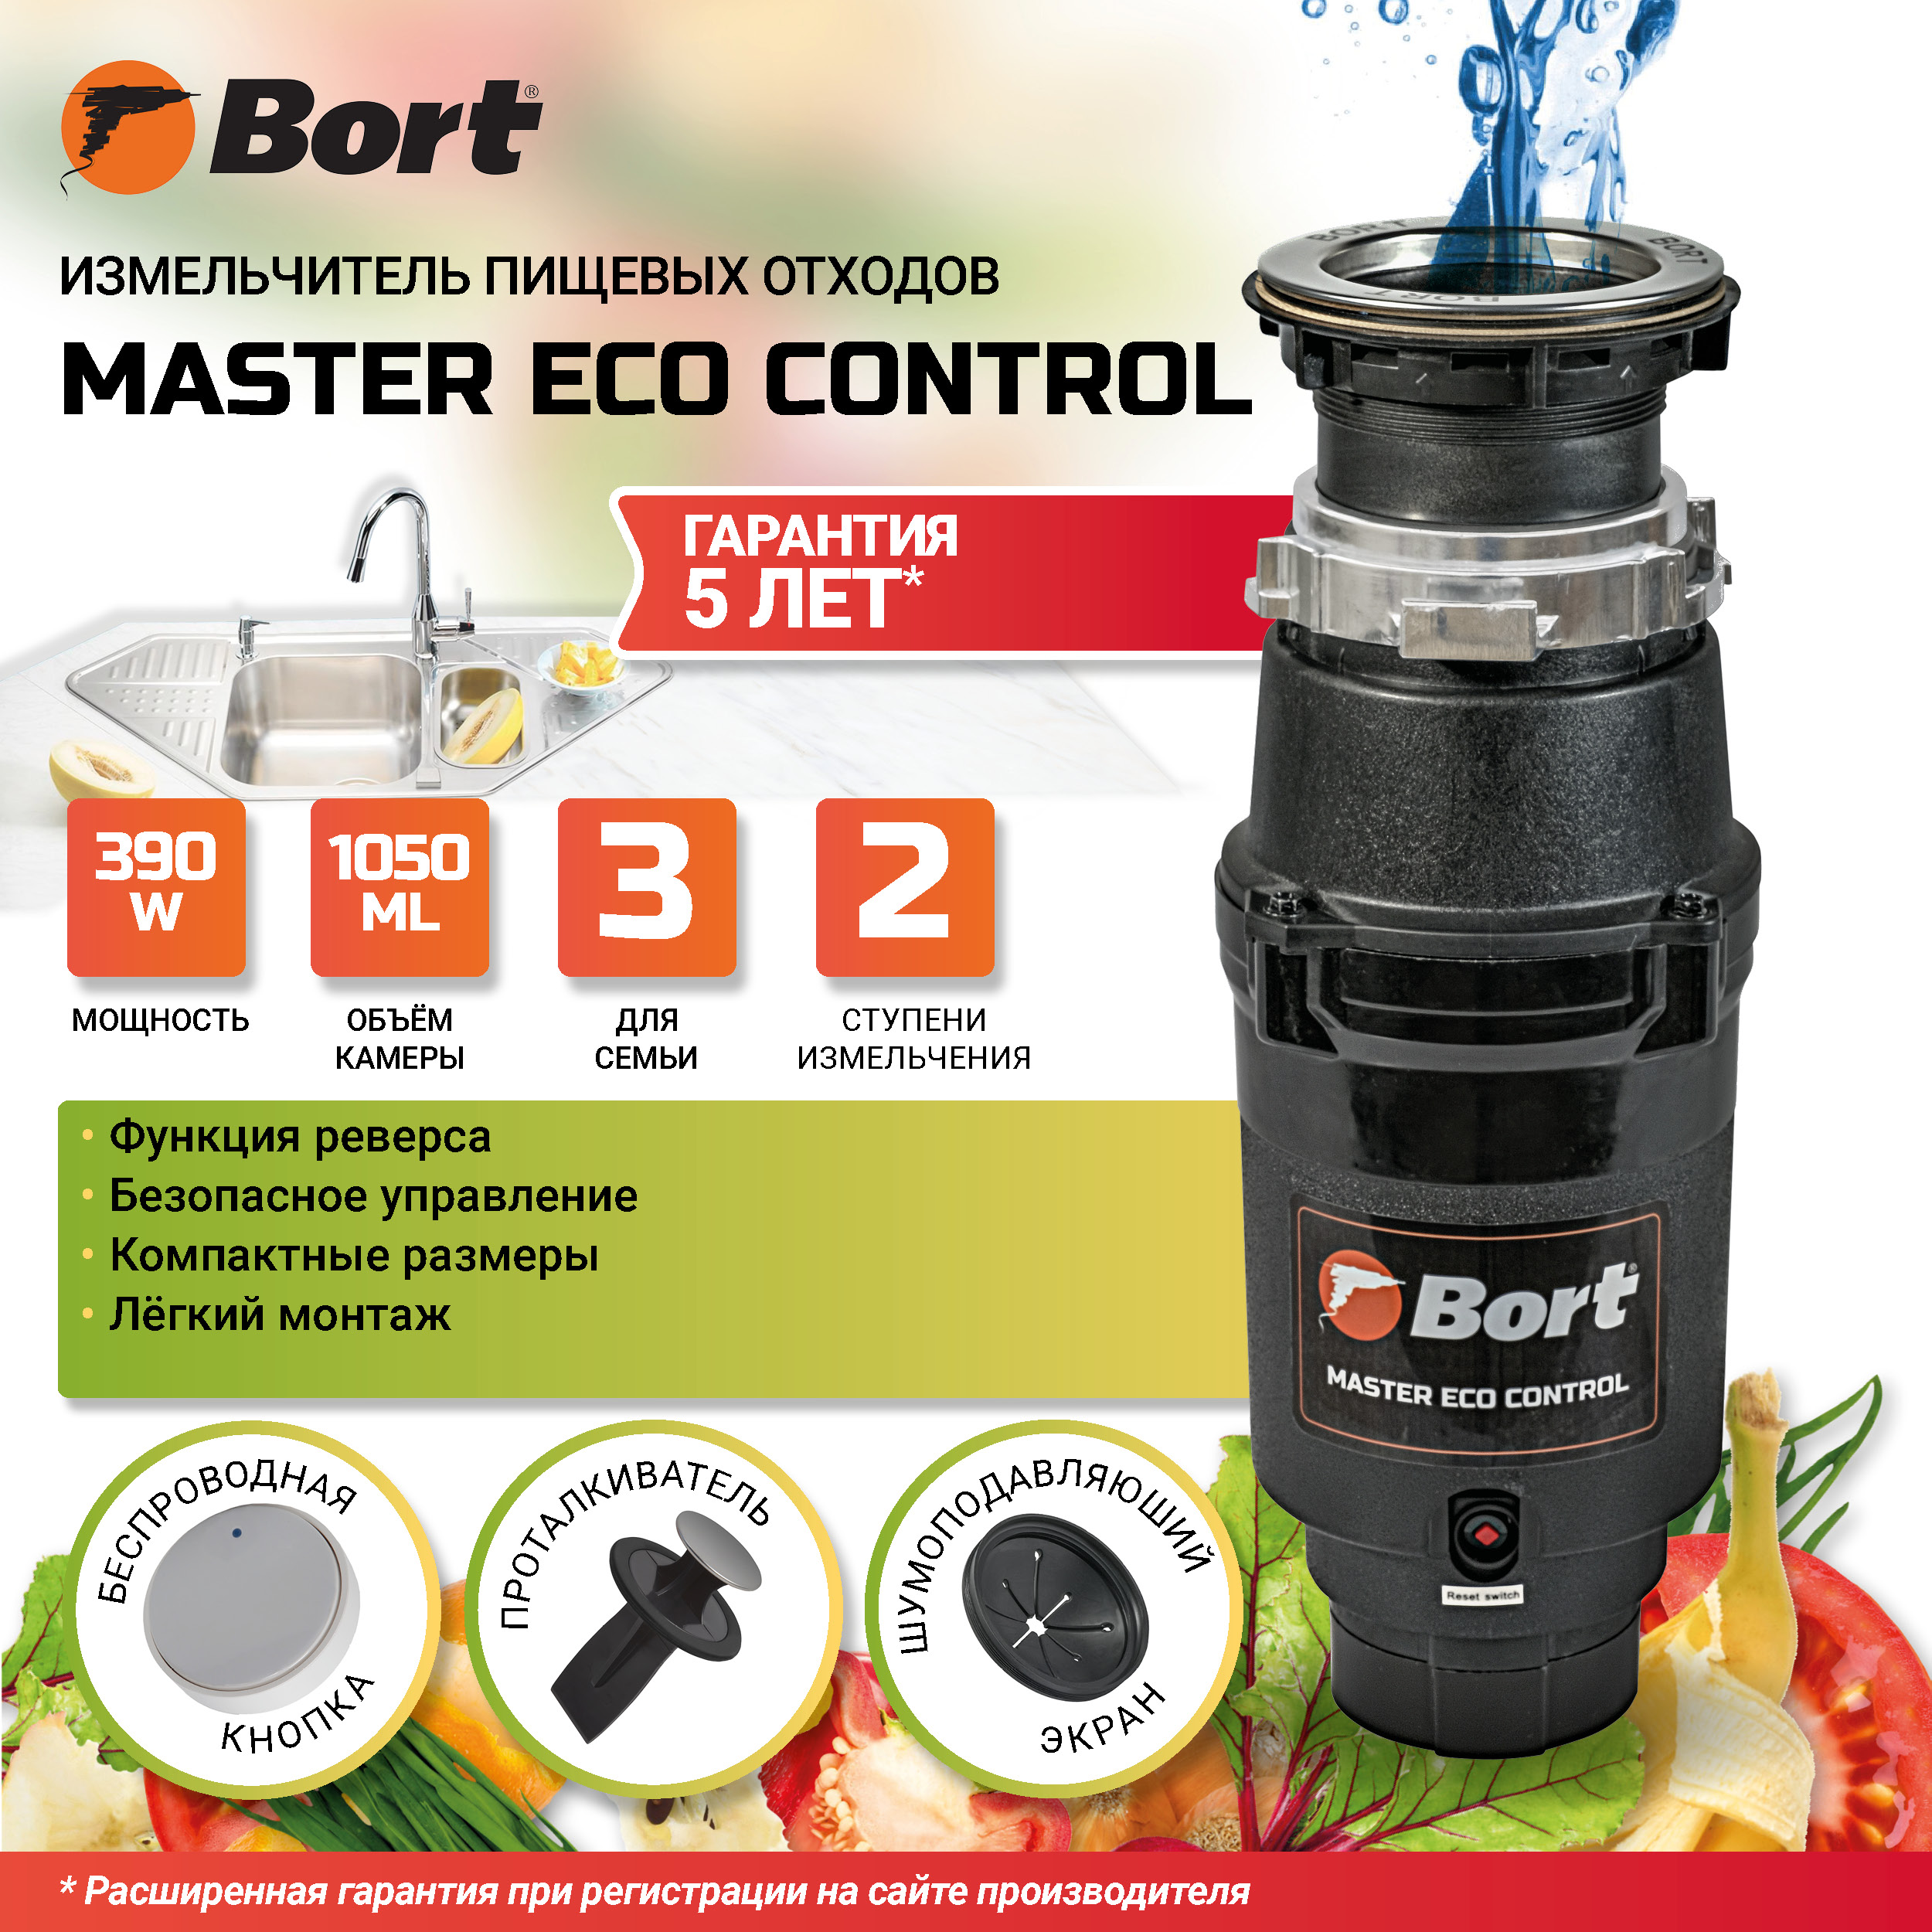 Измельчитель пищевых отходов BORT MASTER ECO Control измельчитель пищевых отходов bort titan max power fullcontrol 93410266 серебристый